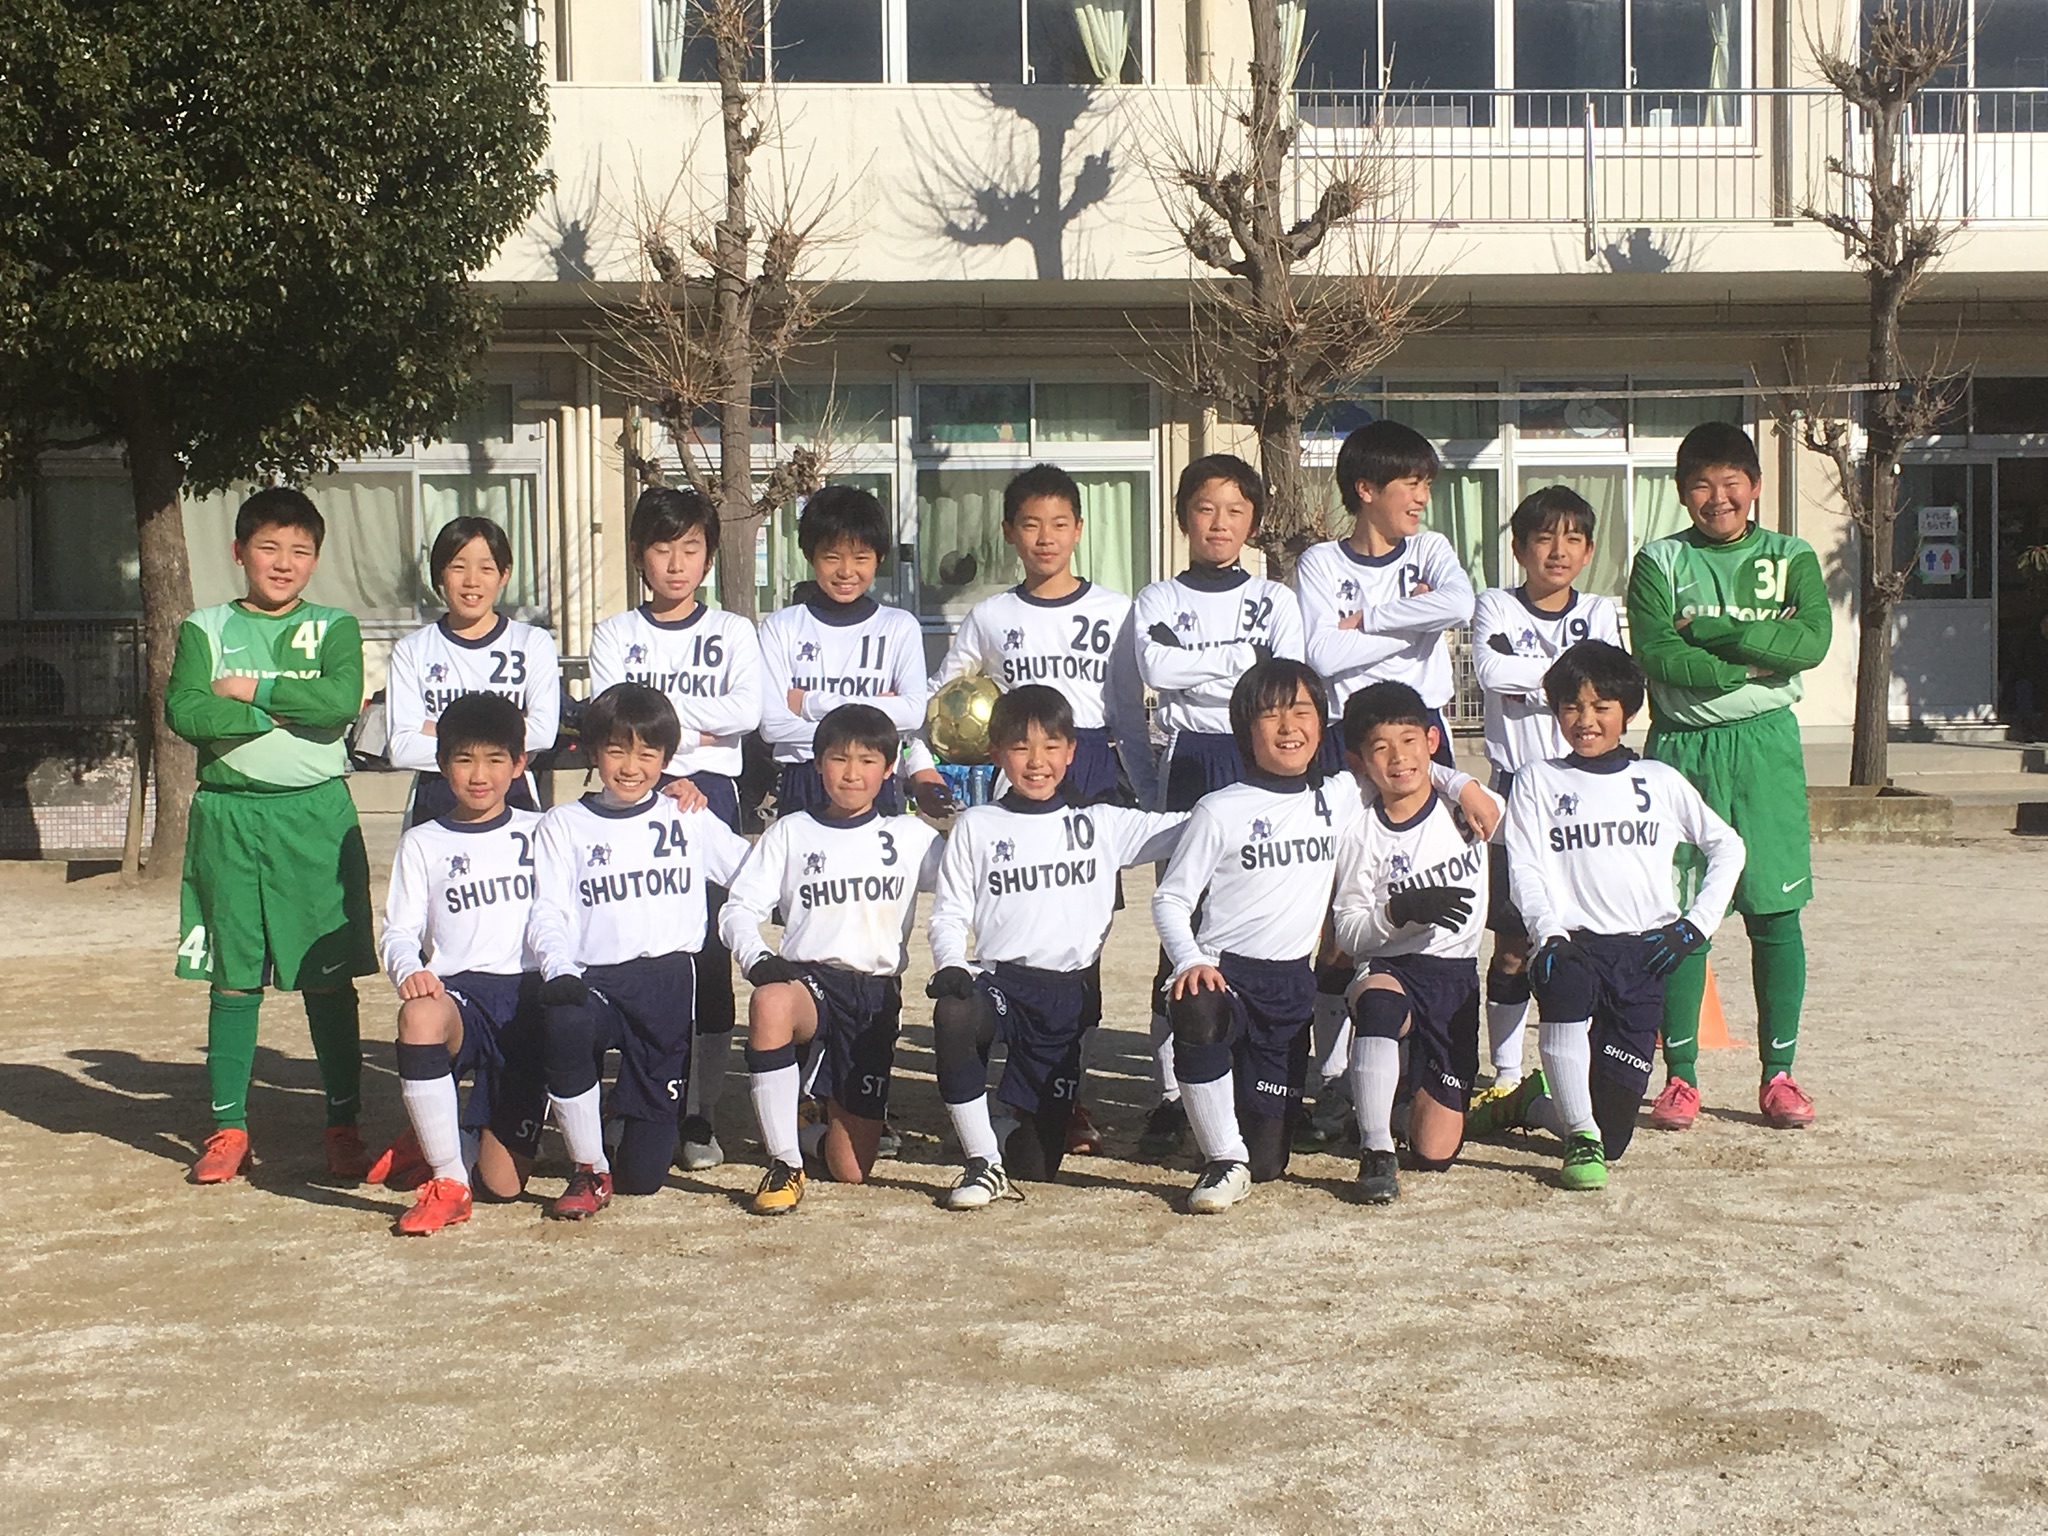 修徳fc ジュニア選手コース 幼児 小学生のサッカースクール Blog Archive 6年生 市川bay Cup